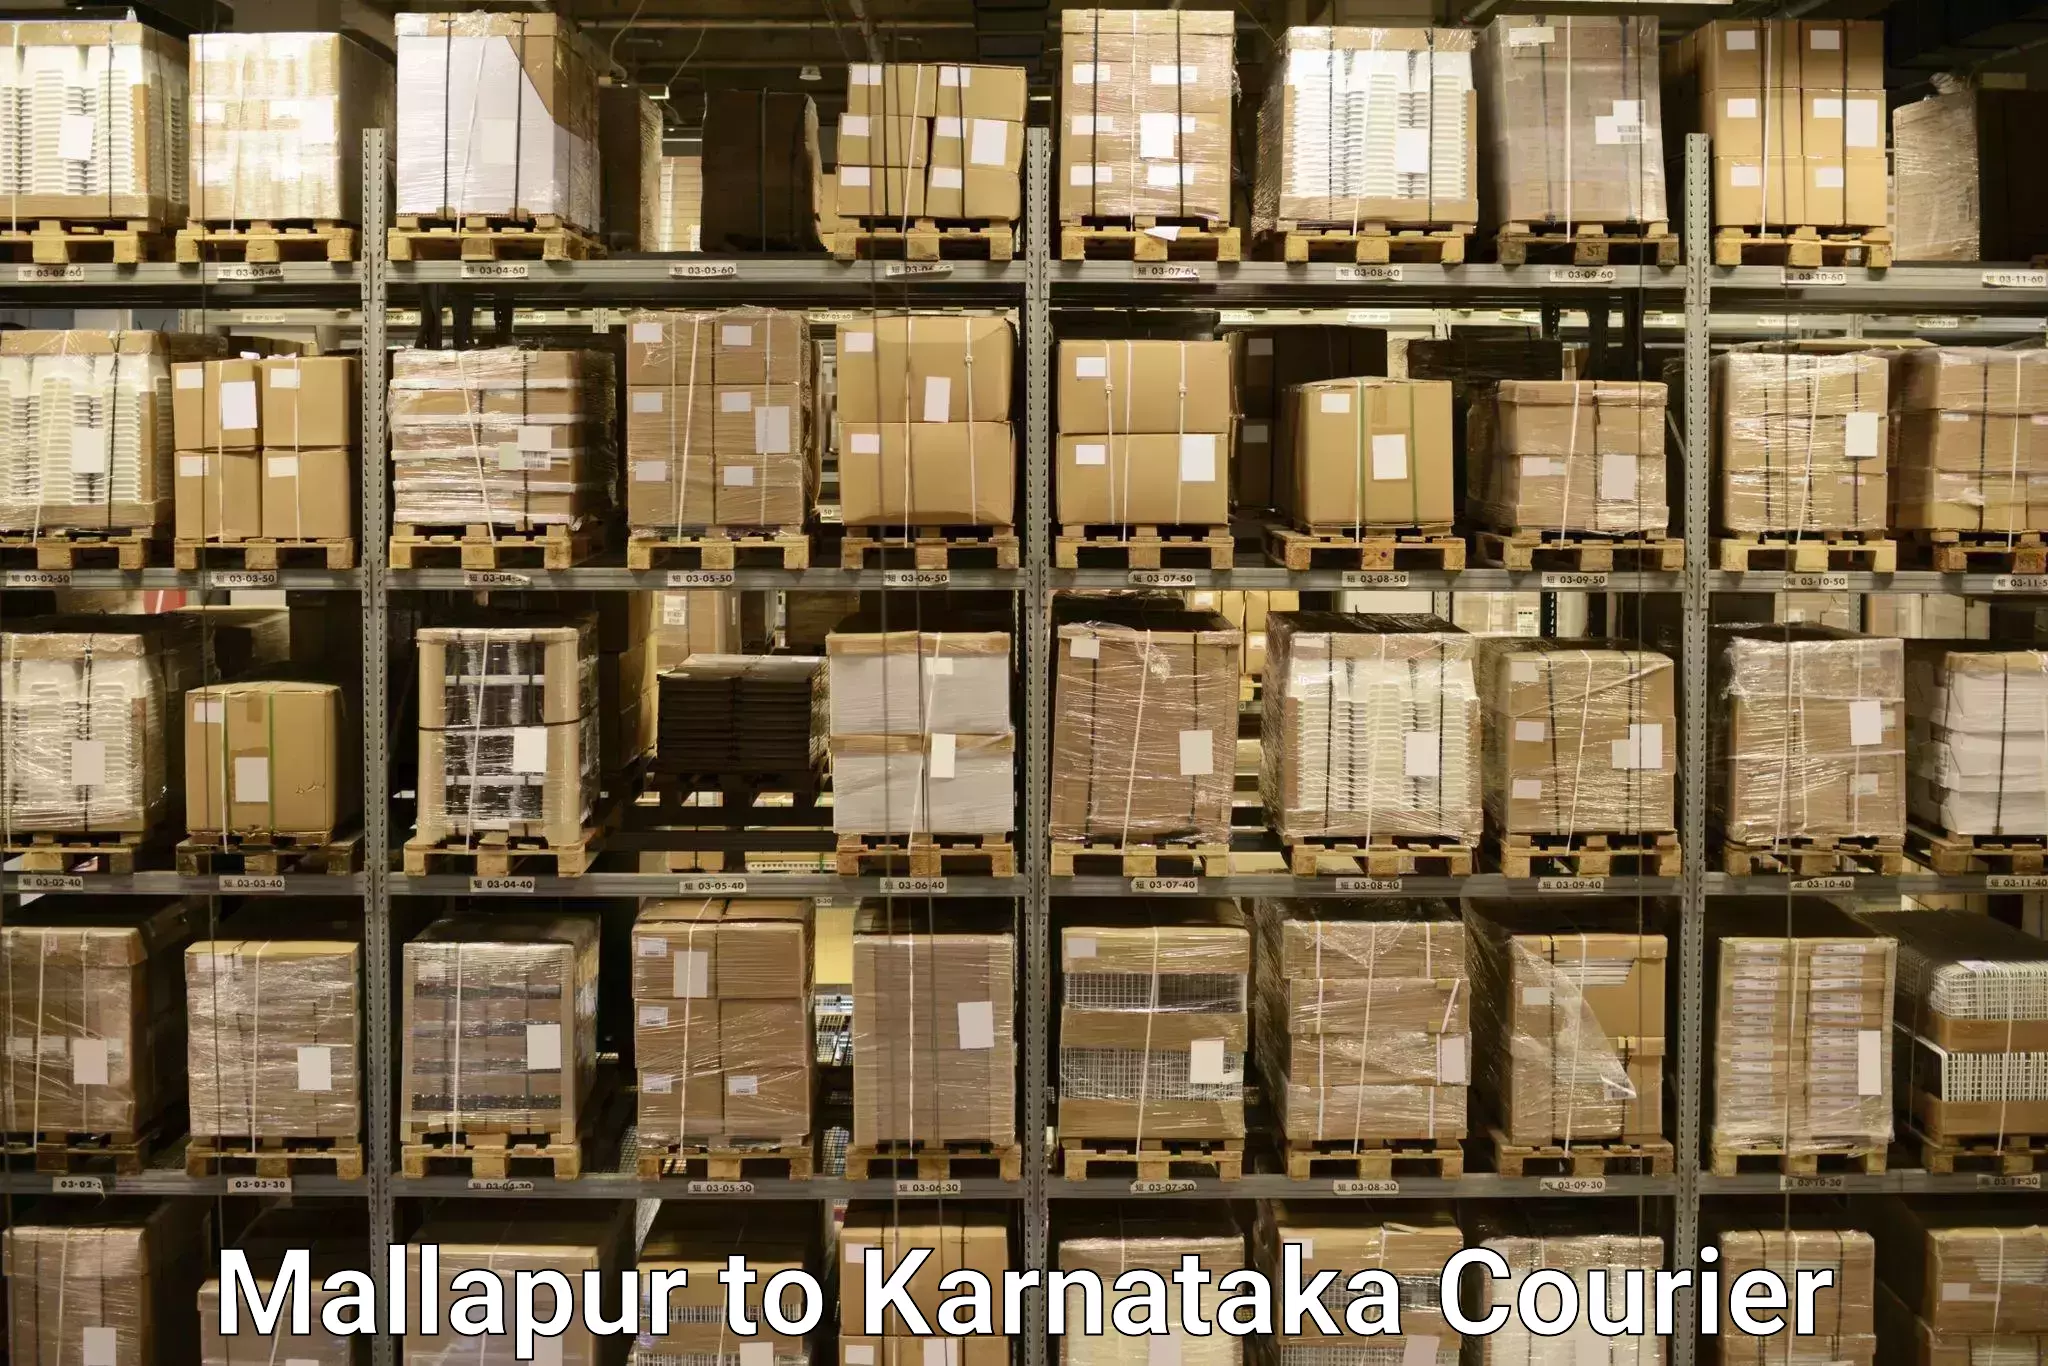 Baggage transport scheduler Mallapur to Hanur